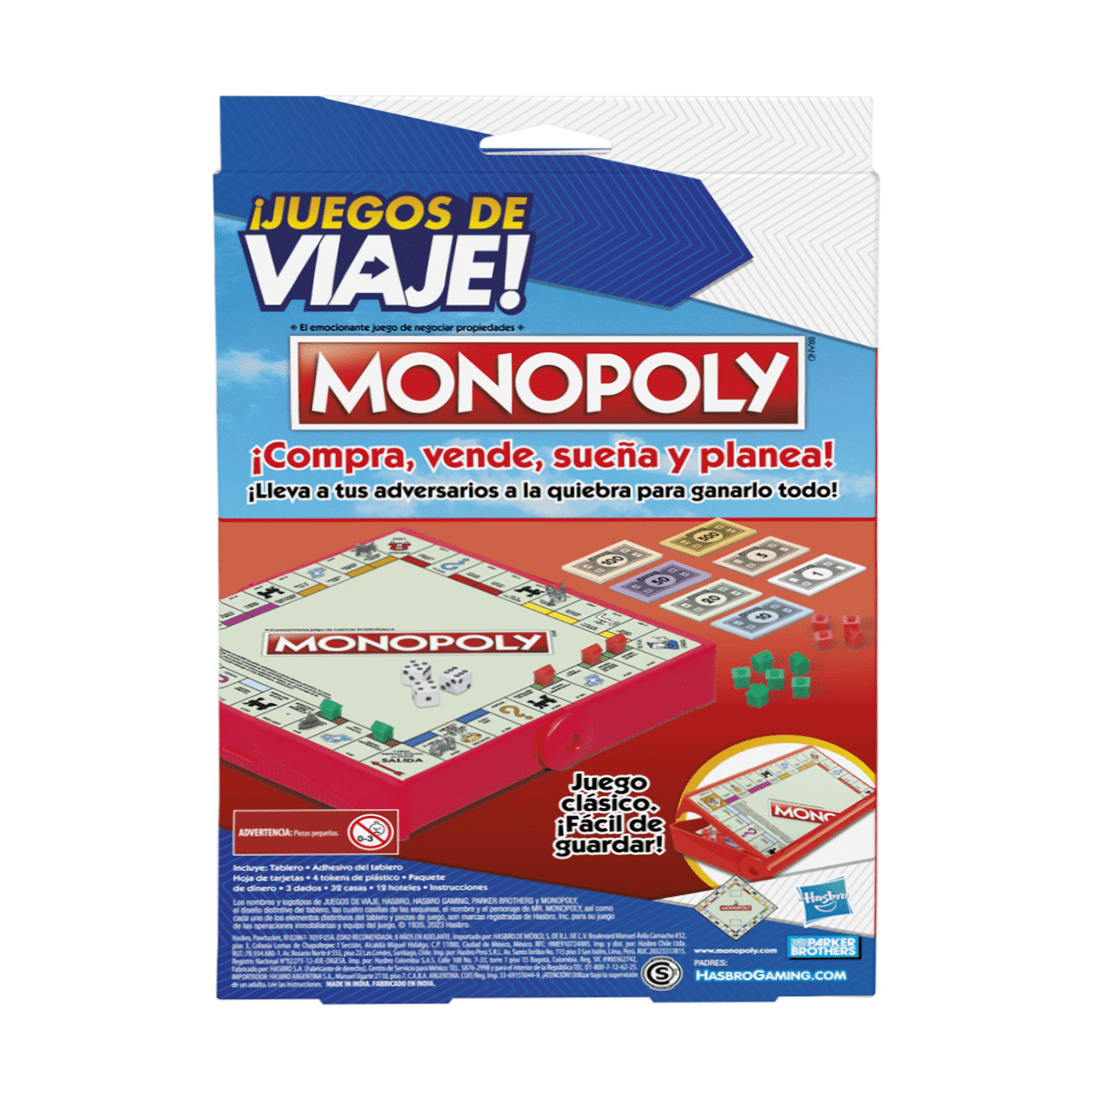 Pepe Ganga - Haz que tus paseos sean inolvidables con Monopoly edición  juegos de viaje. Llévalo a un increíble precio pagando con la tarjeta de  crédito Pepe Ganga. Válido del 16 de